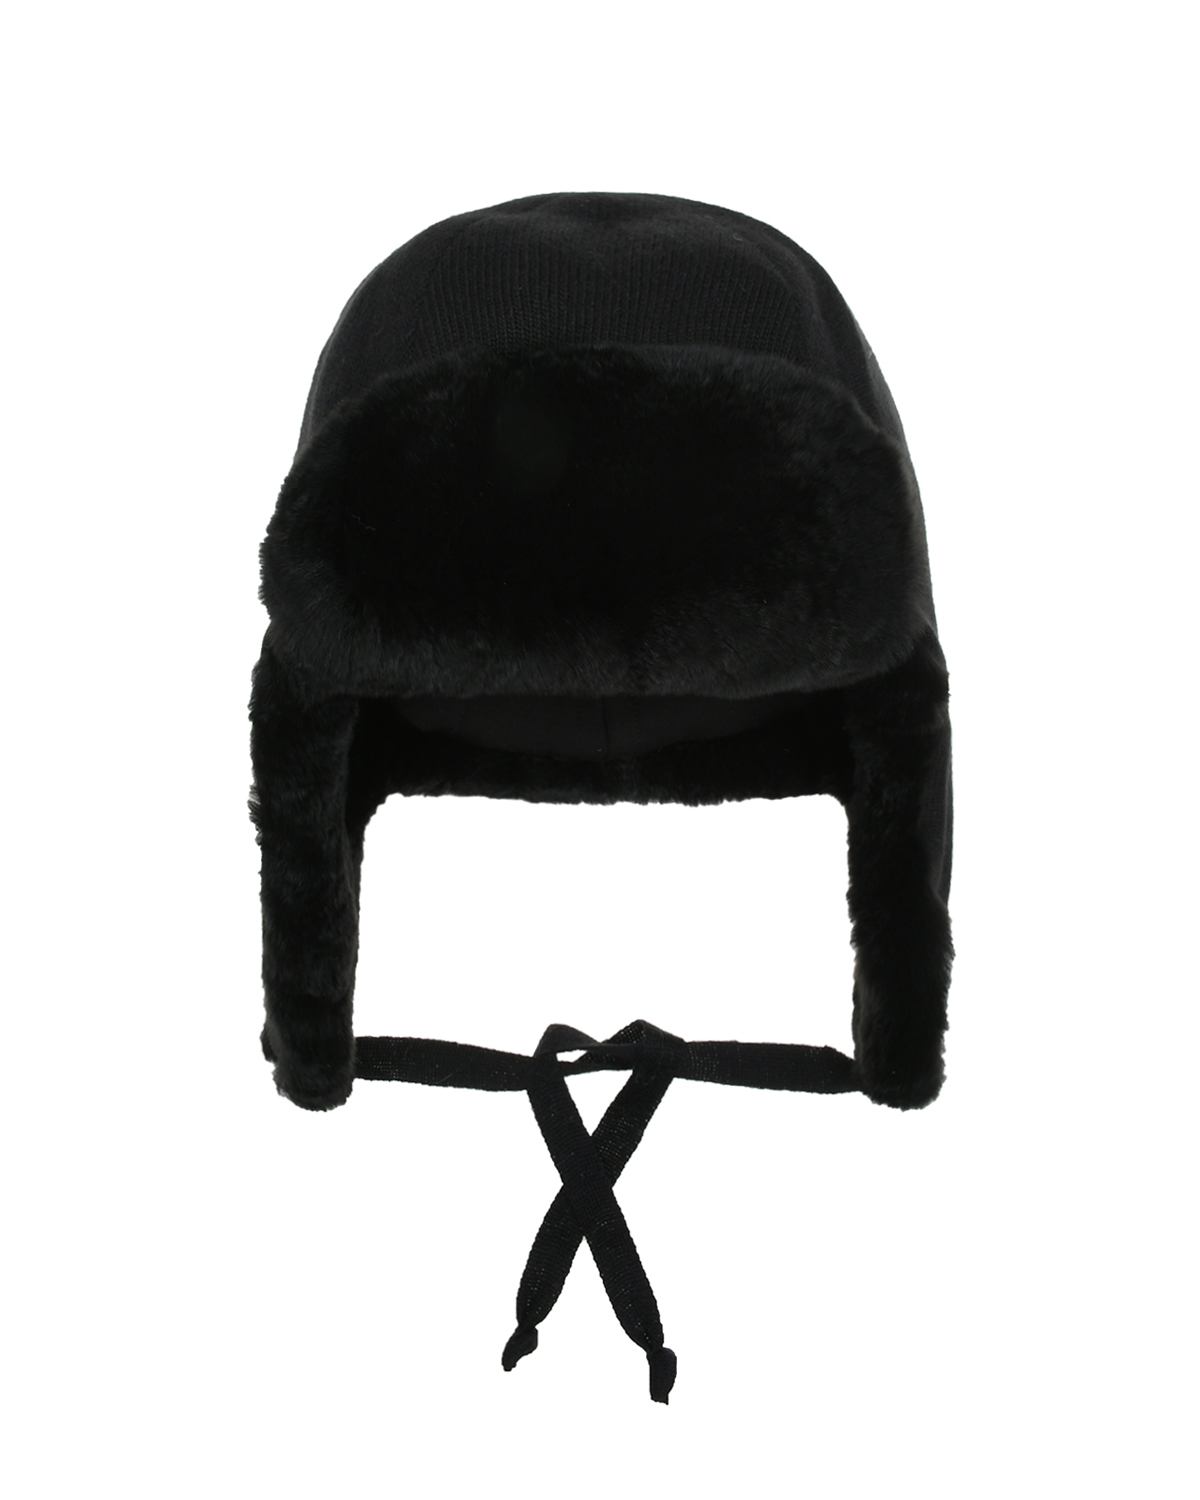 Черная шапка ушанка с меховой подкладкой Chobi детская, размер 55, цвет черный